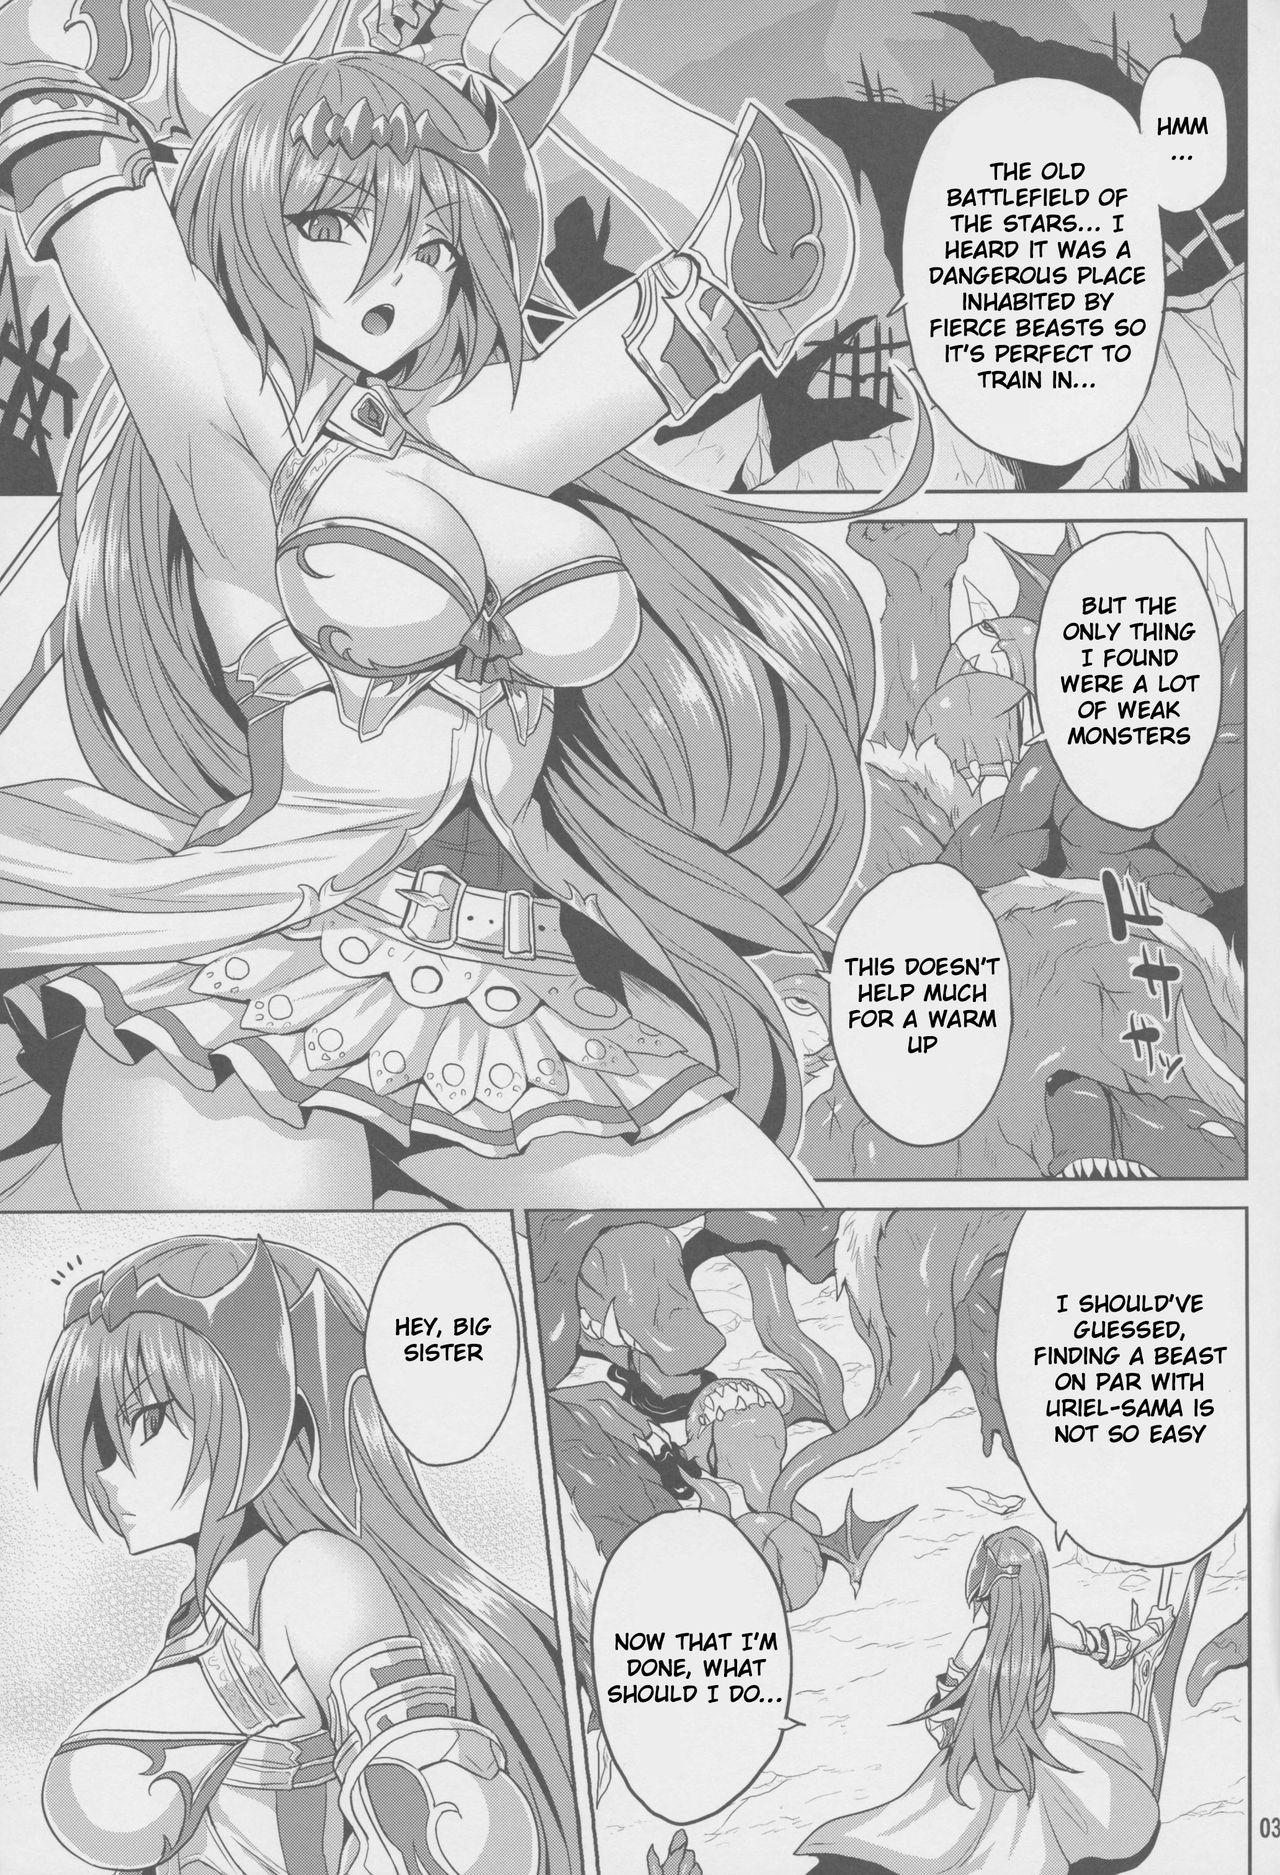 Storyline Kosenjou no Haibokusha - Granblue fantasy Porn - Page 2